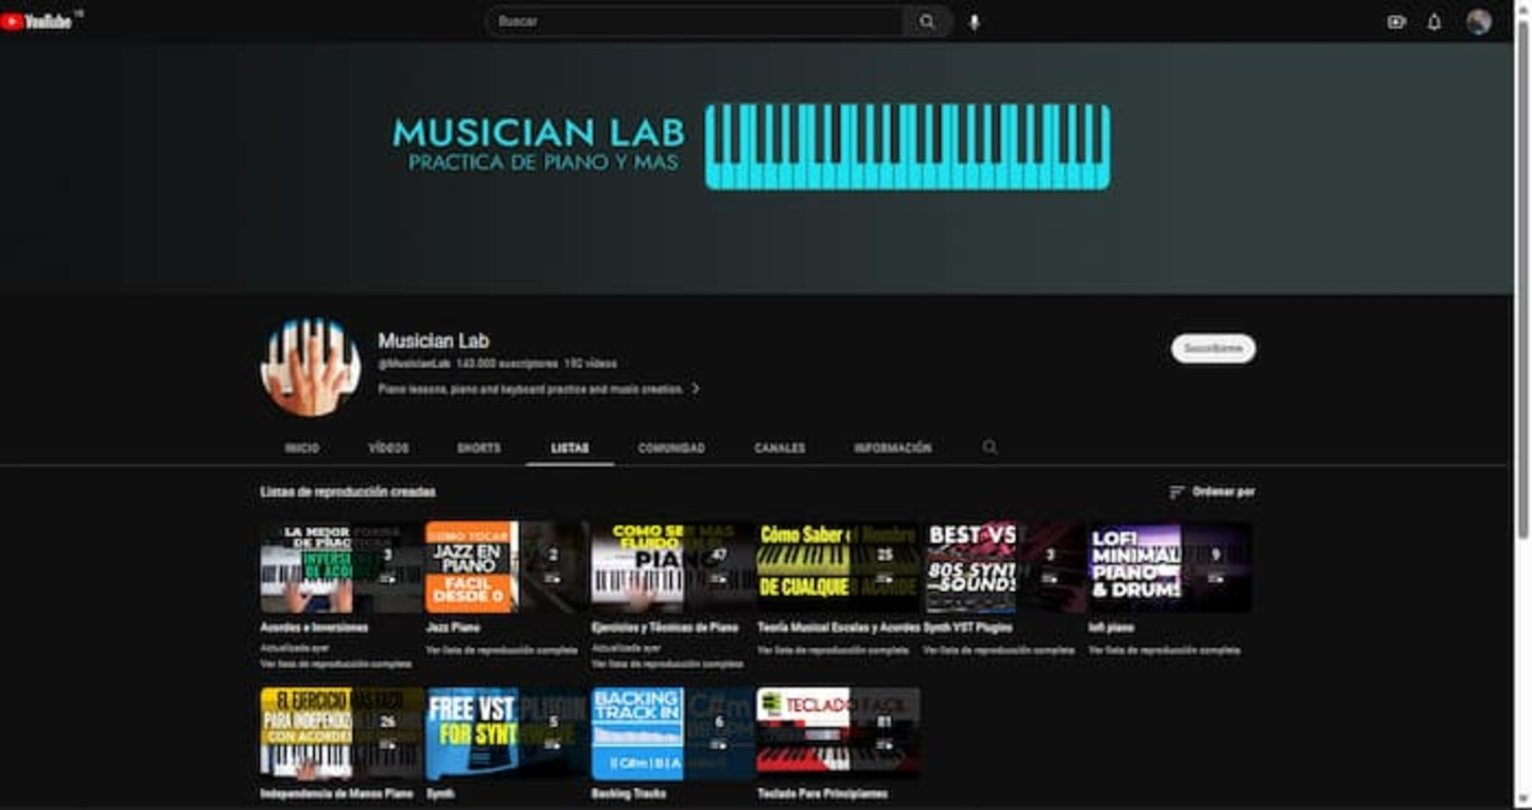 Disfruta de muchas lecciones de piano a través de YouTube con el canal Musician Lab y con las que podrás aprender todo sobre este instrumento